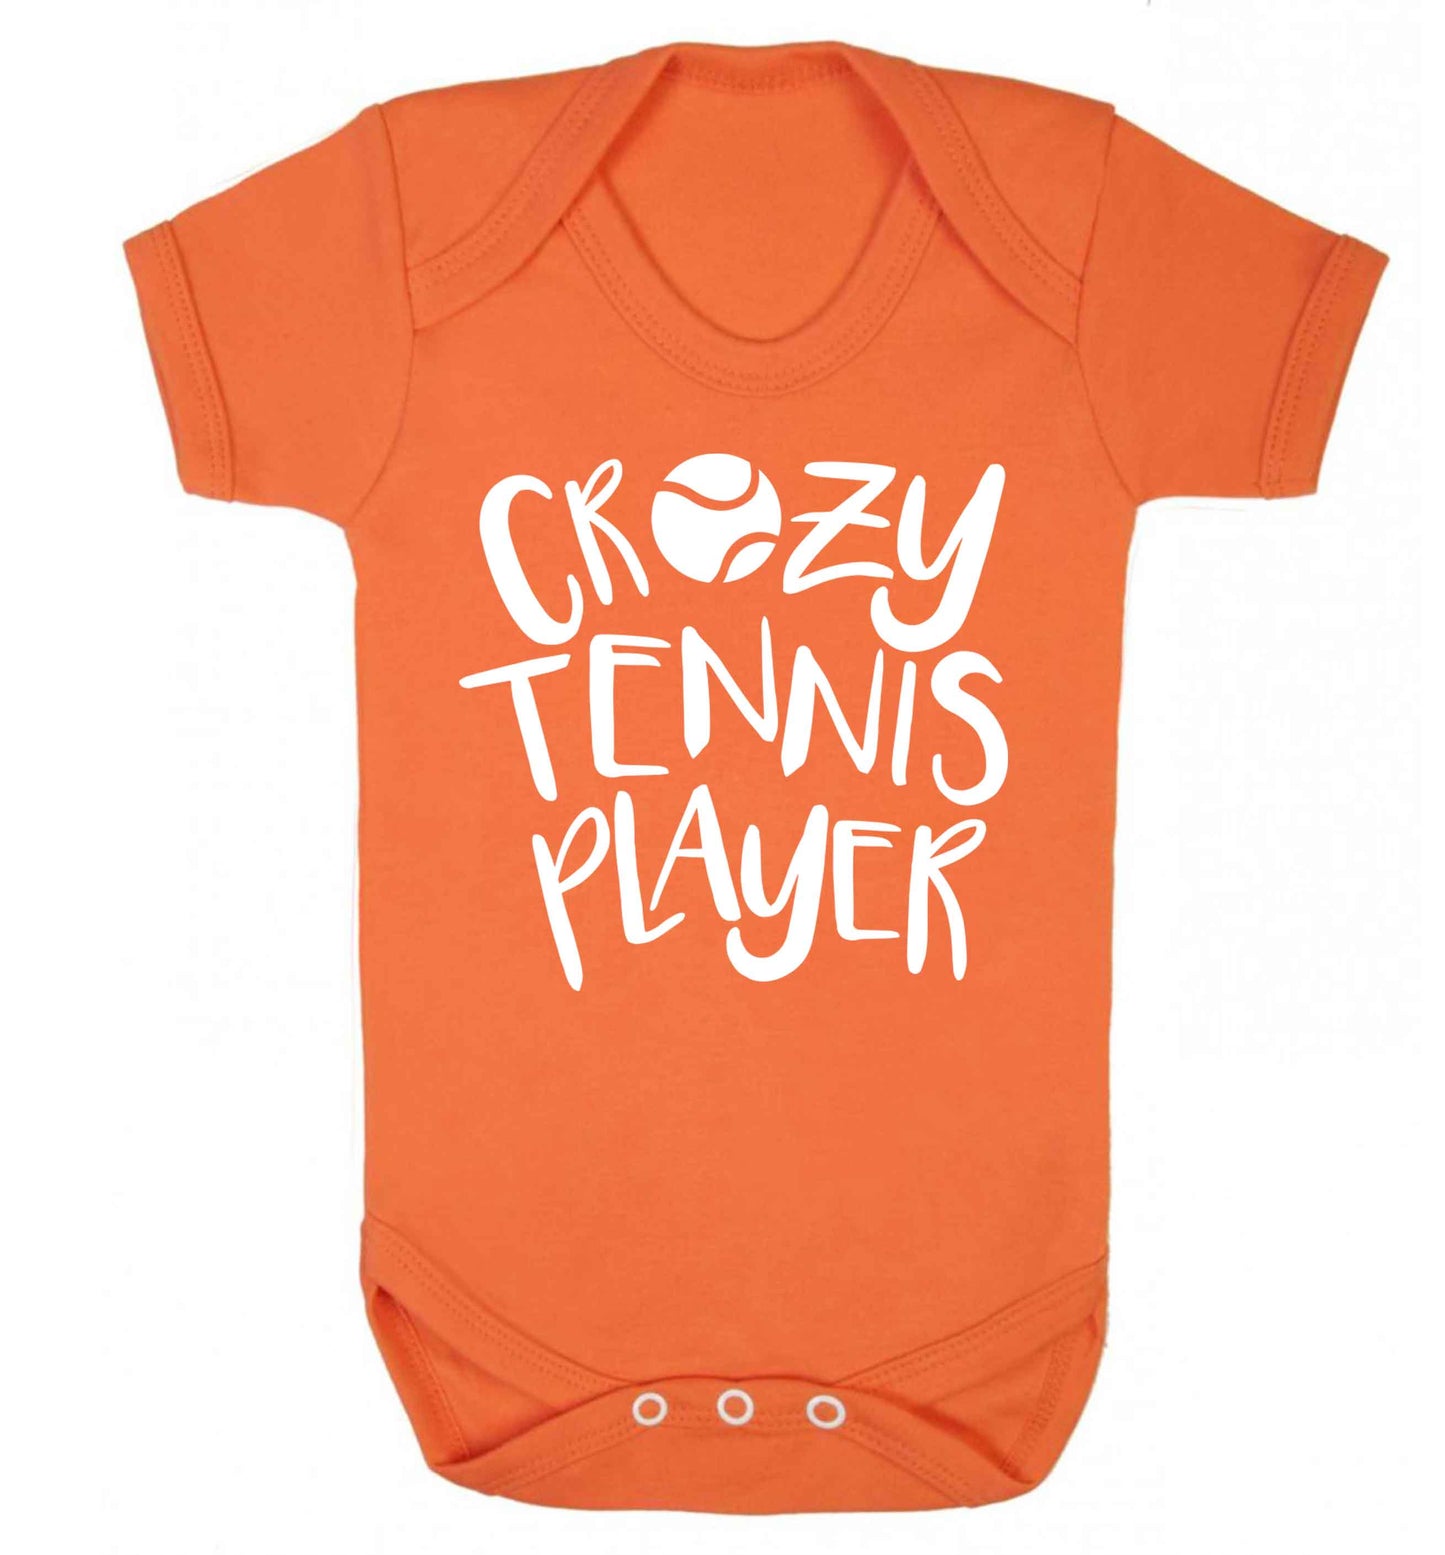 Crazy tennis player Baby Vest orange 18-24 months